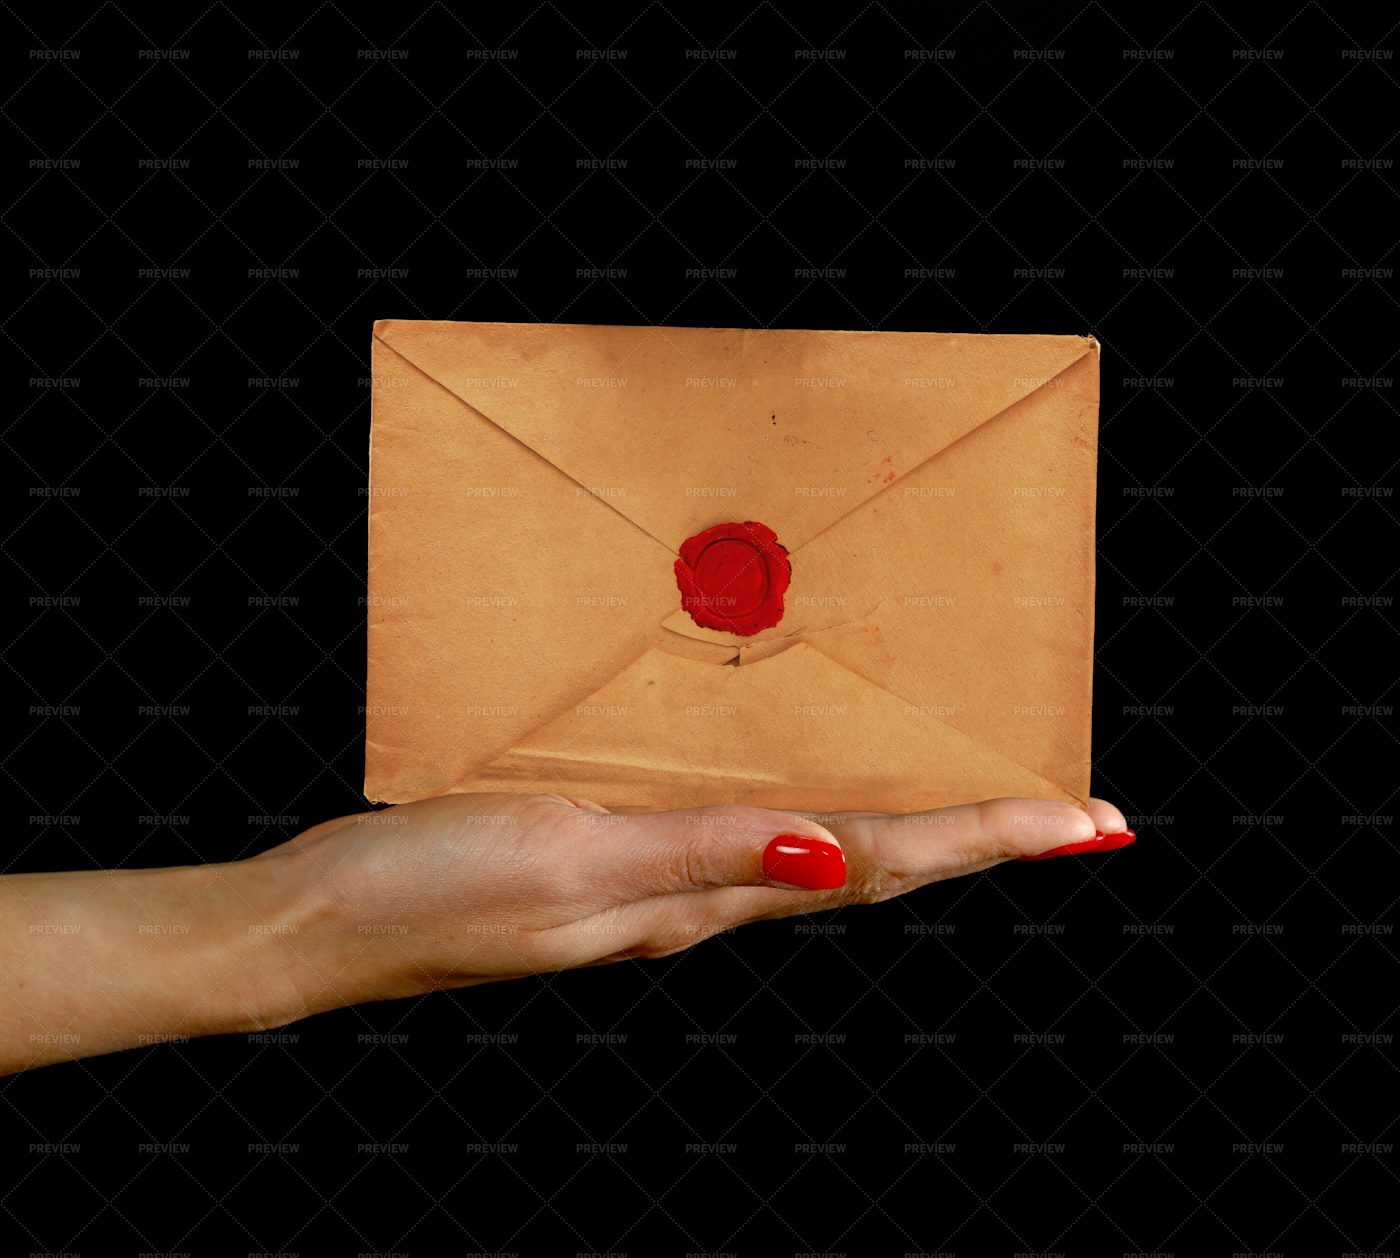 Hand Shows An Envelope: Stock Photos